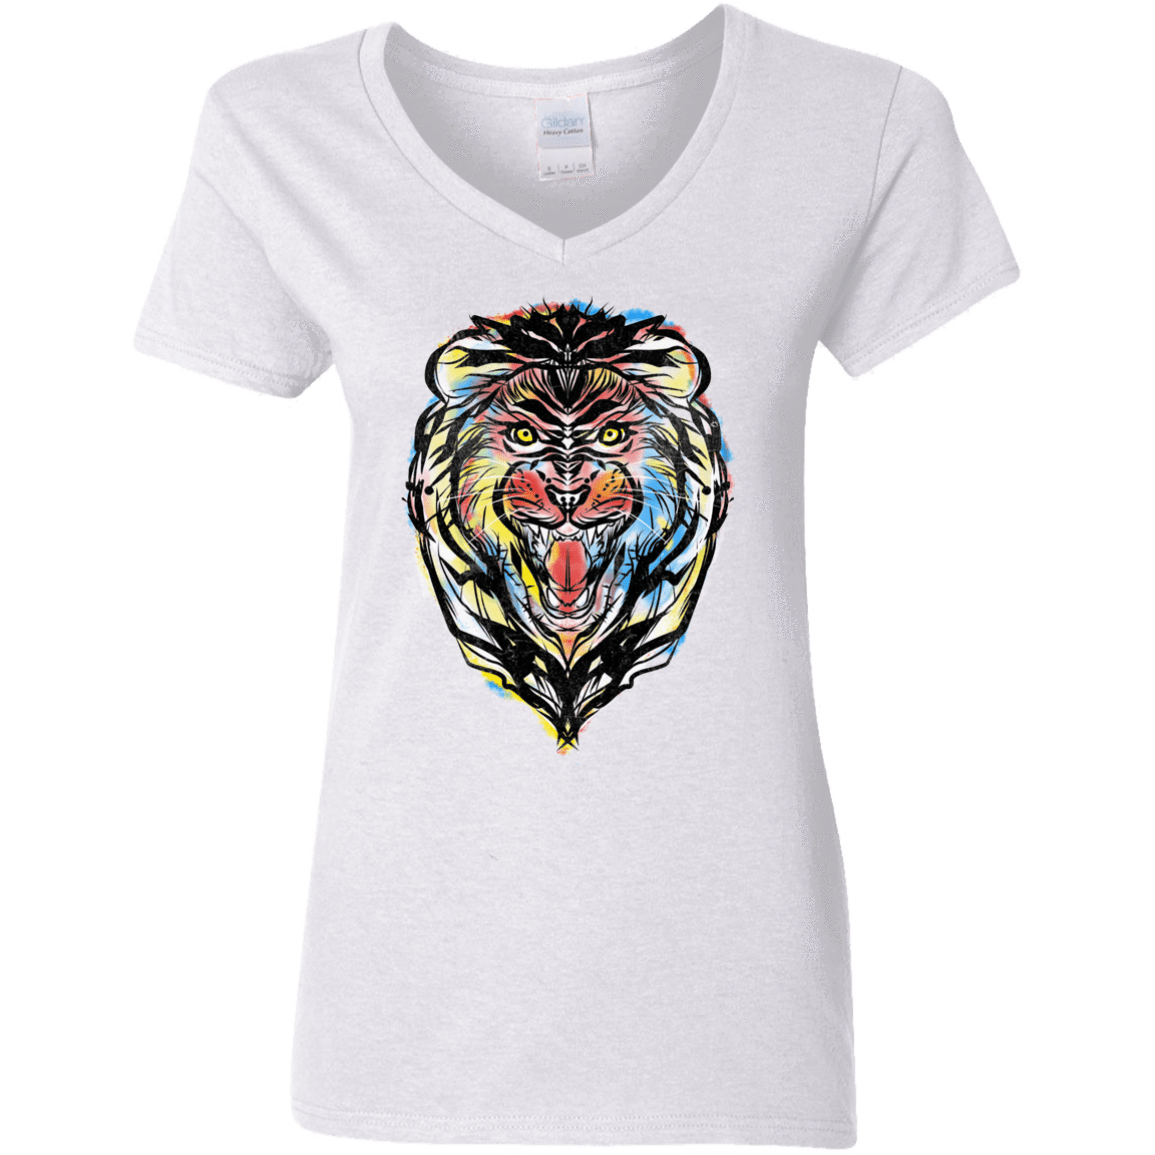 T-Shirts White / S Stencil Lion Women's V-Neck T-Shirt